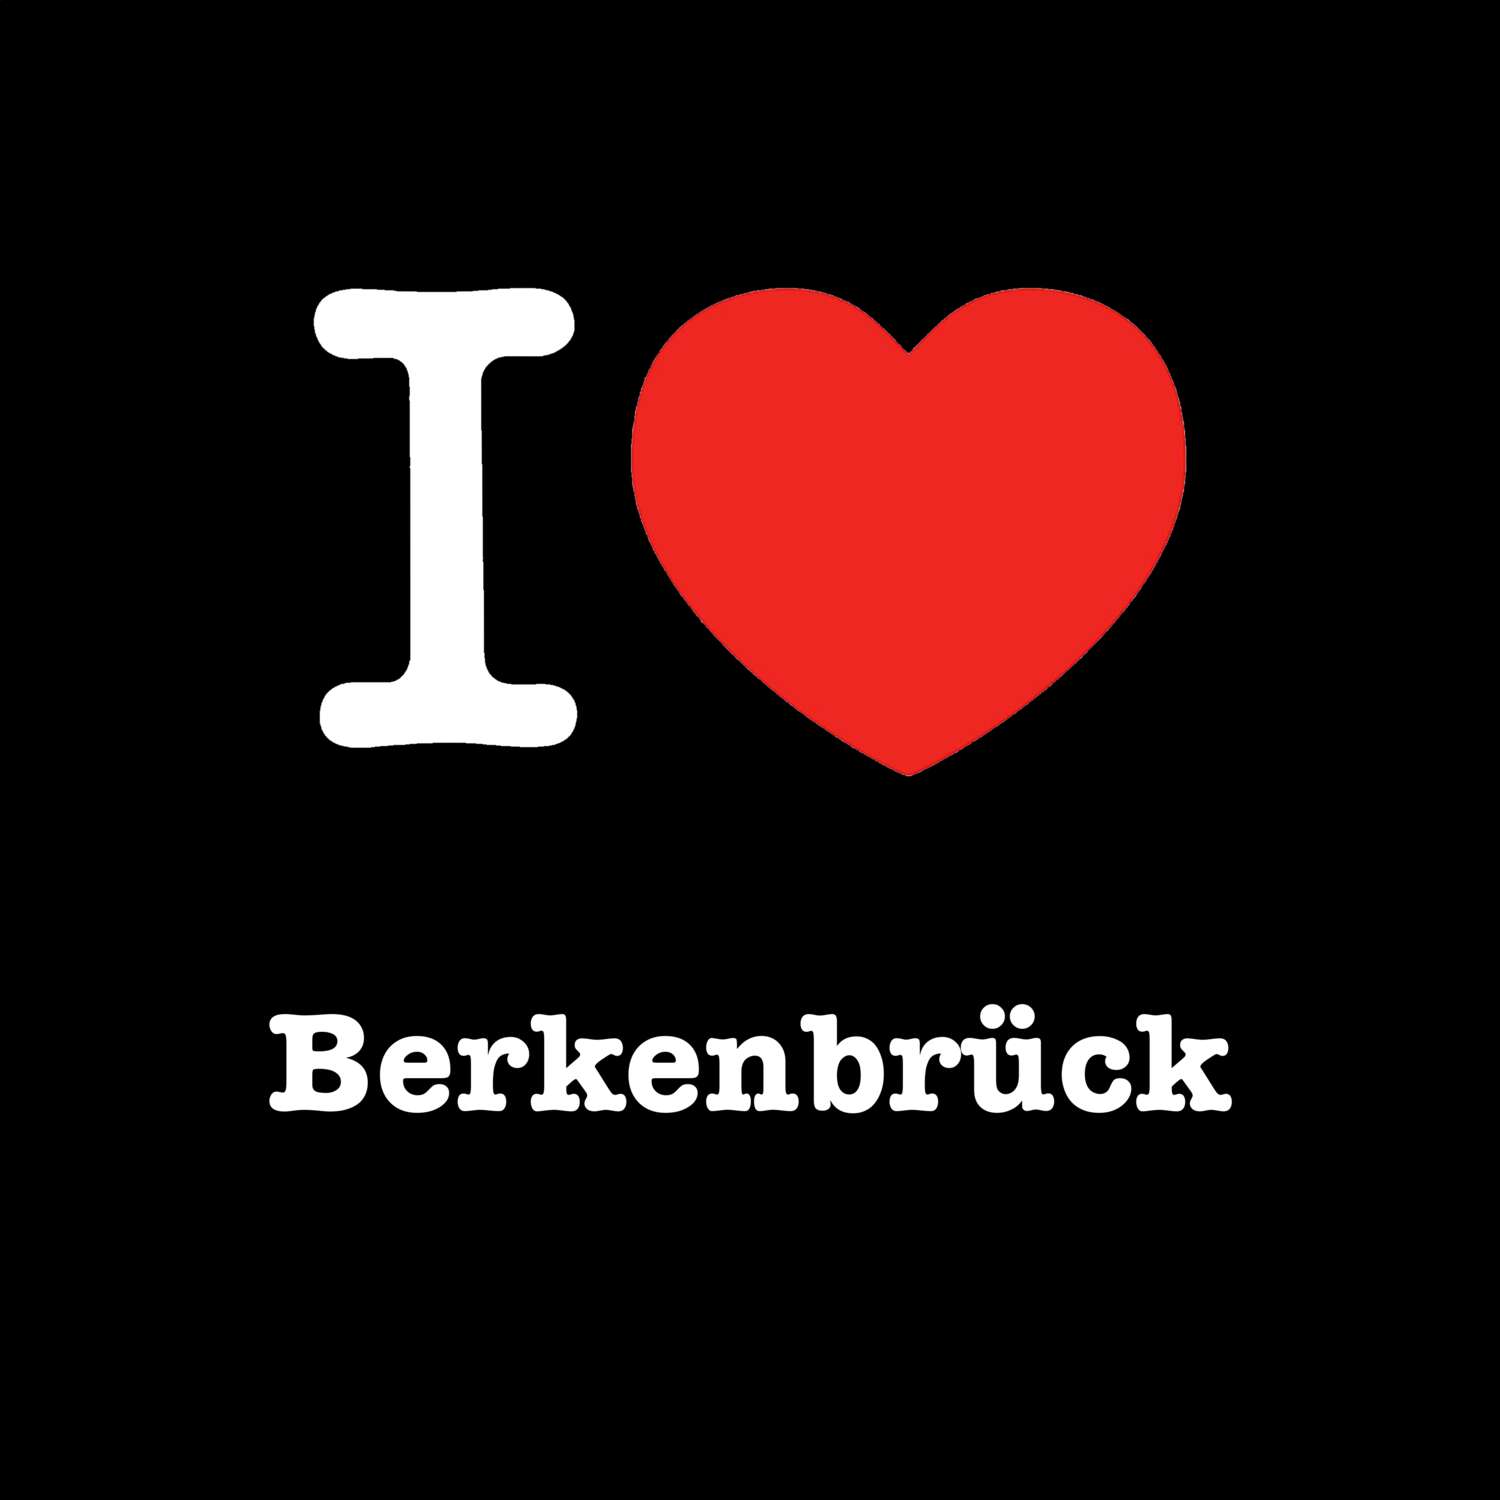 Berkenbrück T-Shirt »I love«